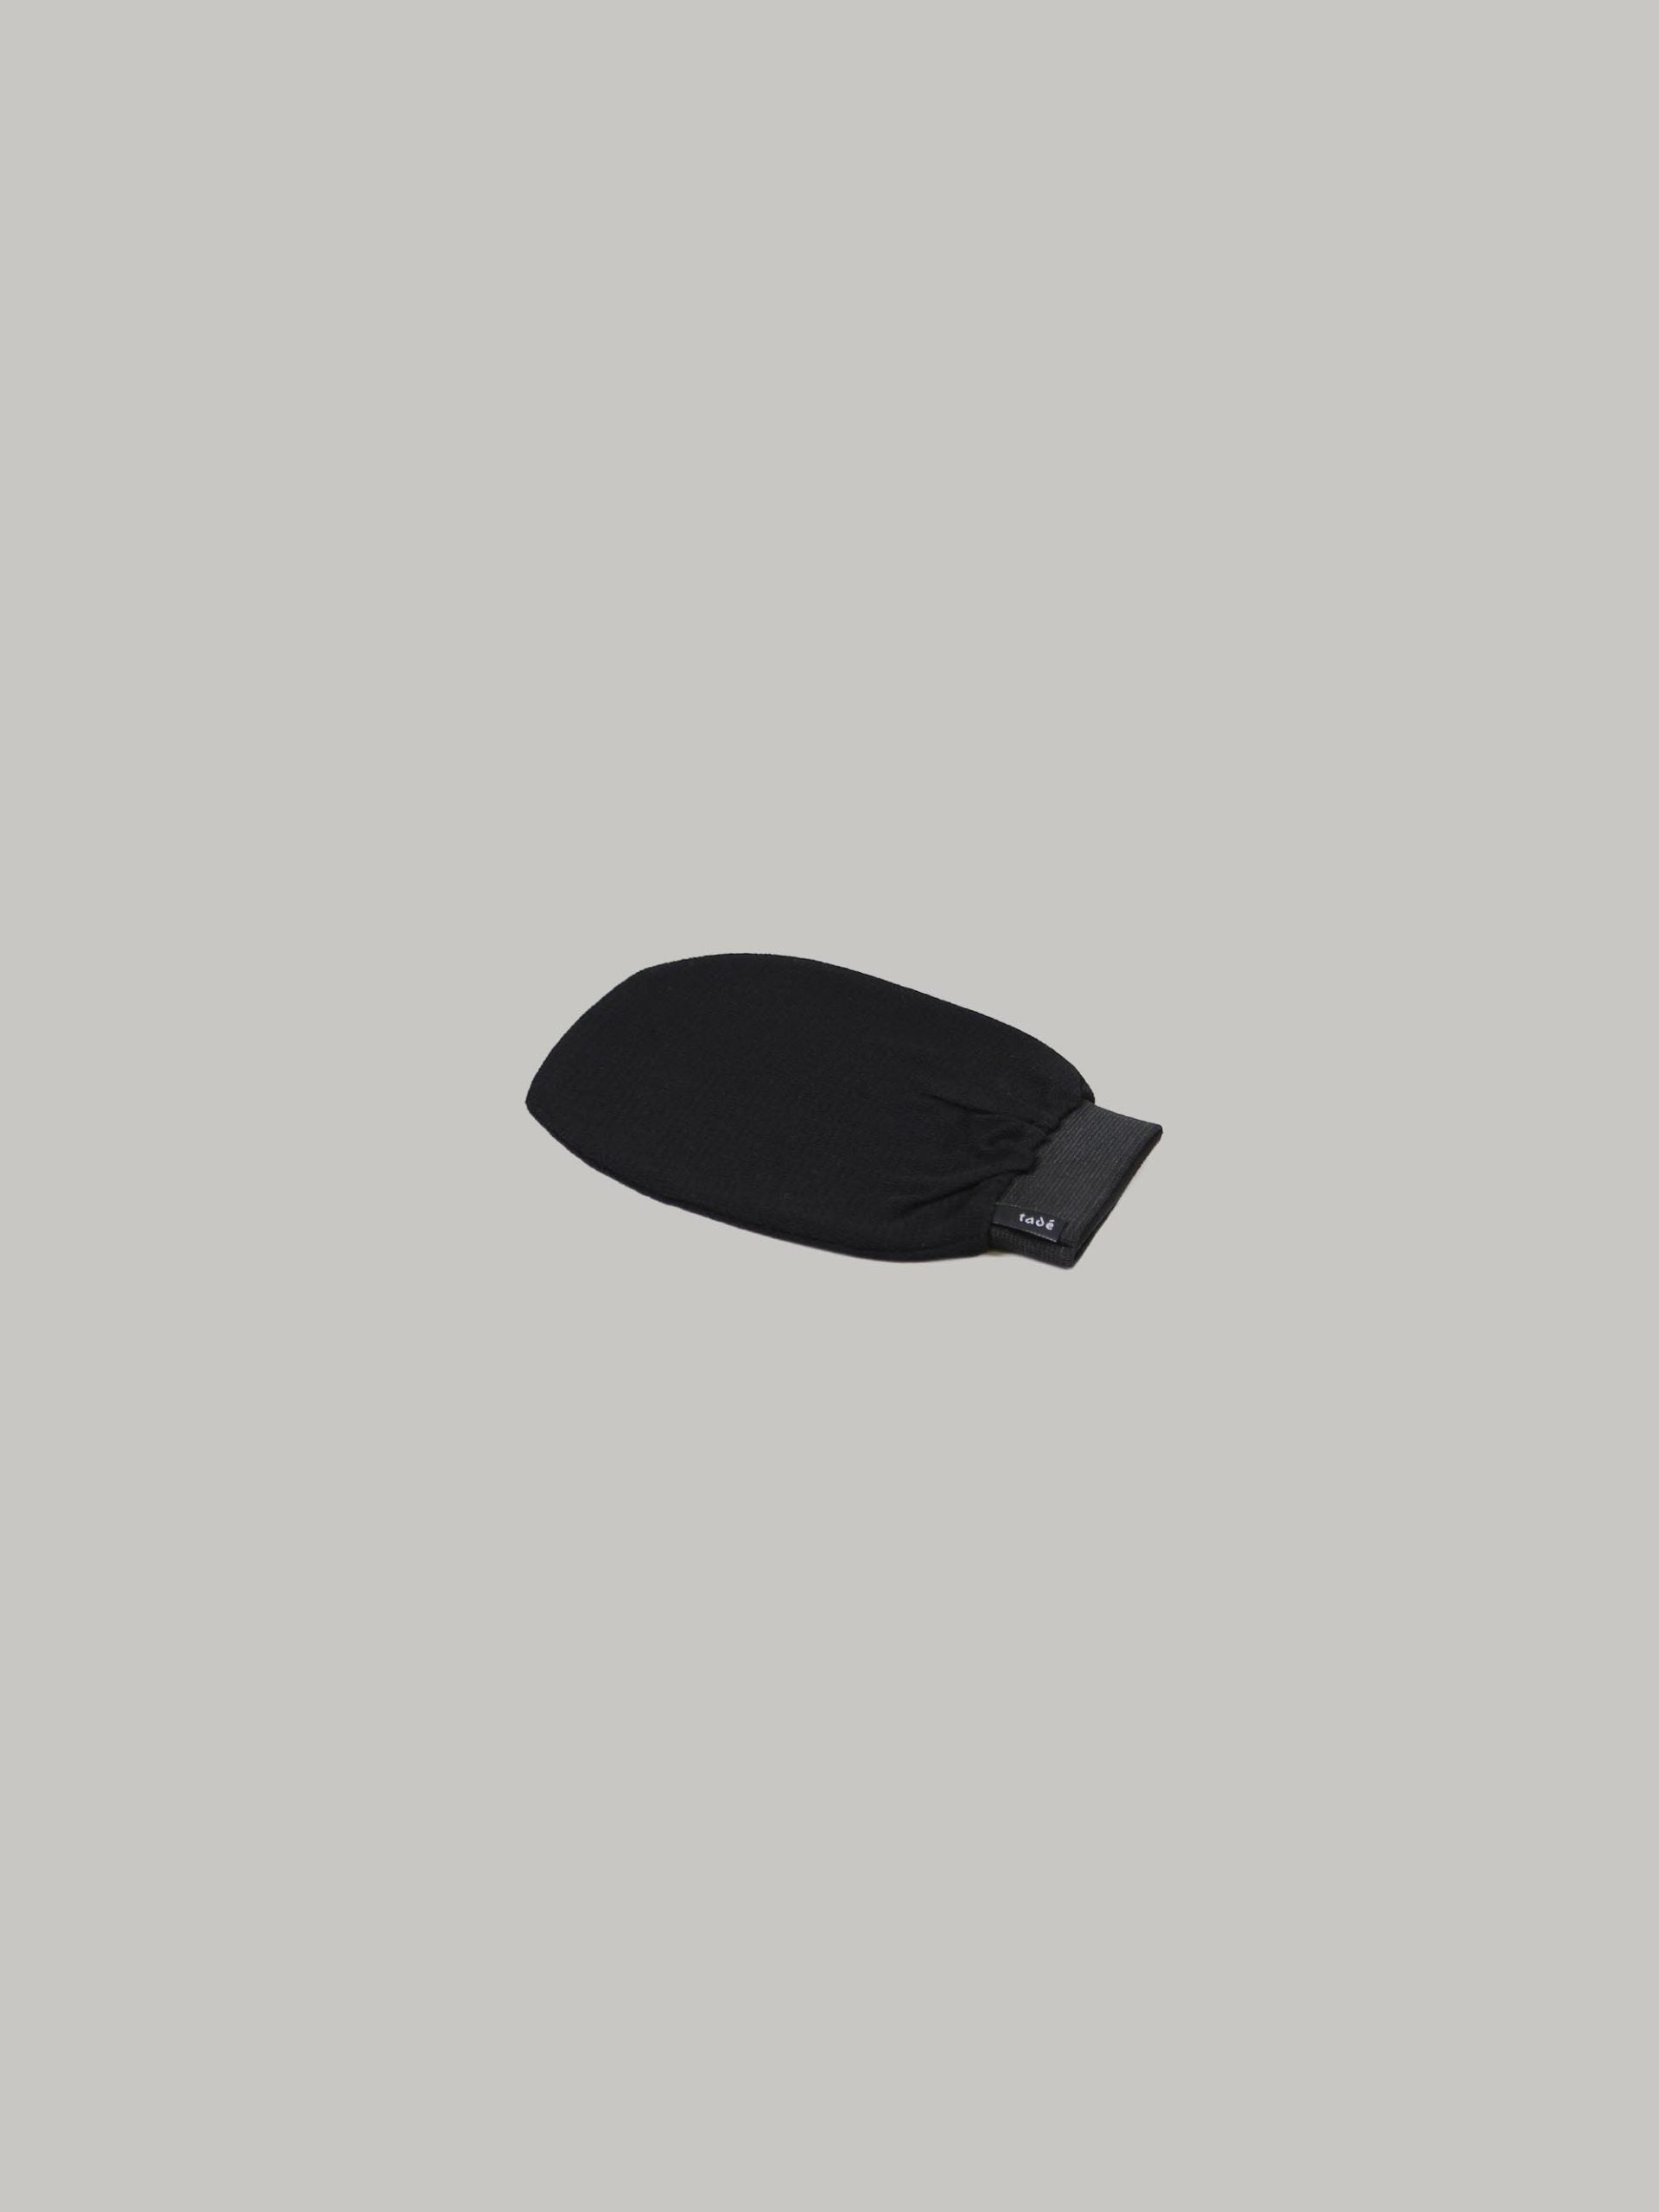 כפפת חמאם לפילינג בצבע שחור על רקע אפור בהיר